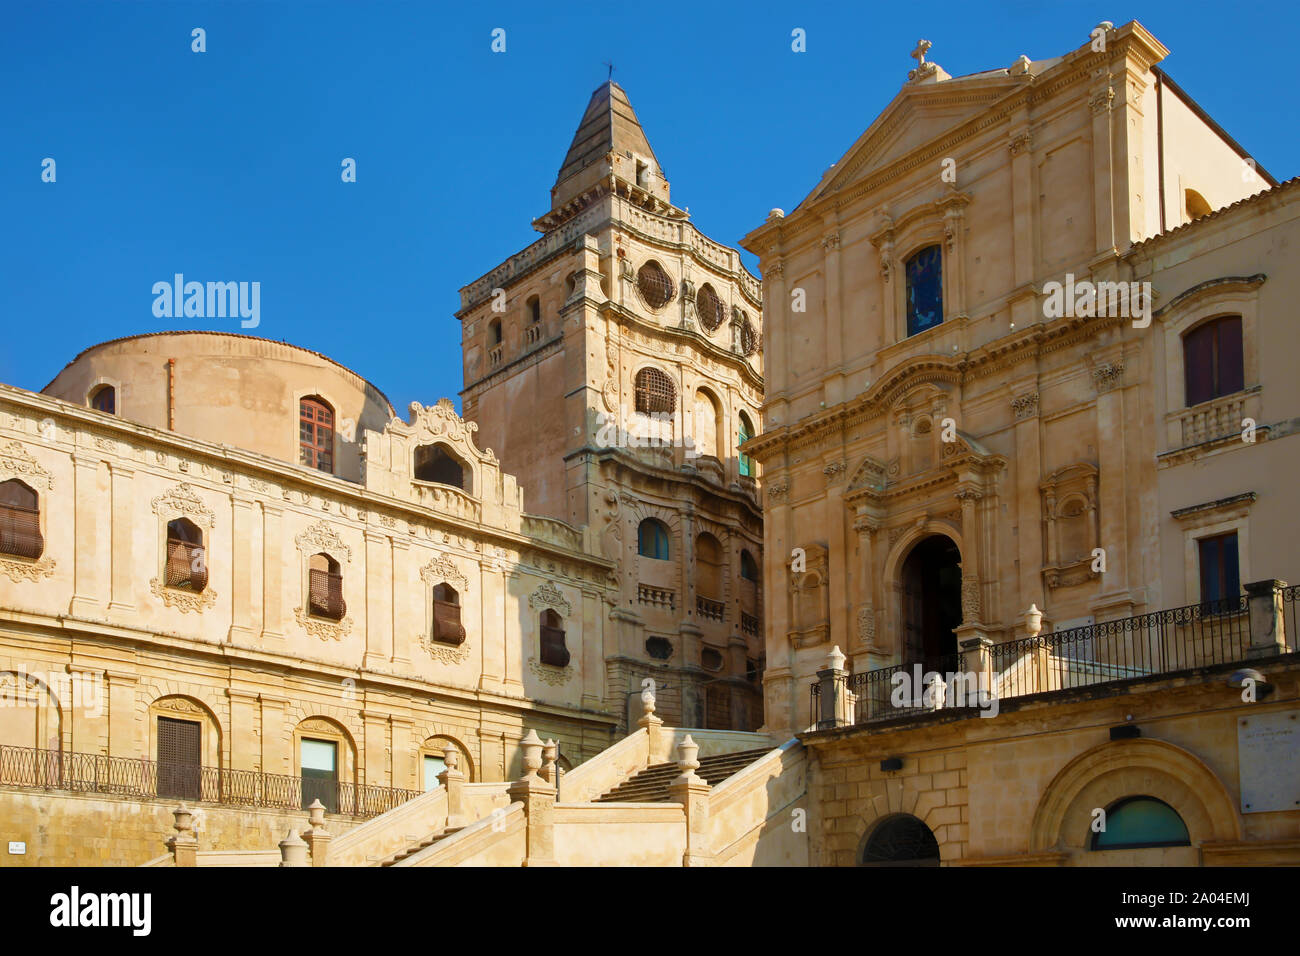 Beautiful baroque architecture in Noto, Sicily Stock Photo